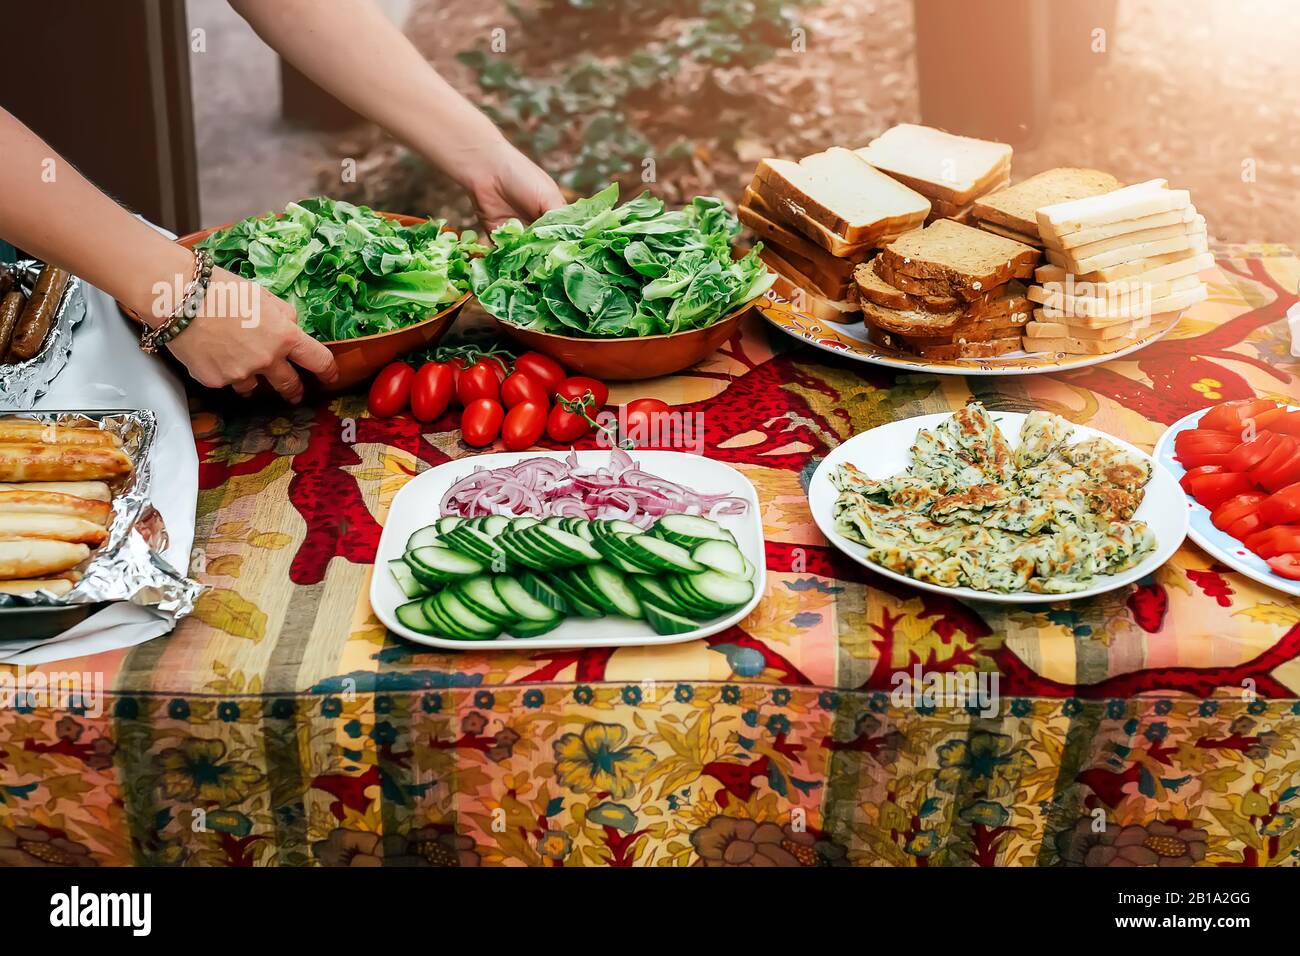 Die Leute bereiten Speisen für die Party zu, servieren Grillwürste grünen Salat, Vegien und Brot auf dem Tisch. Öffentlicher Grillplatz in Australien. Picknick im Park. Stockfoto